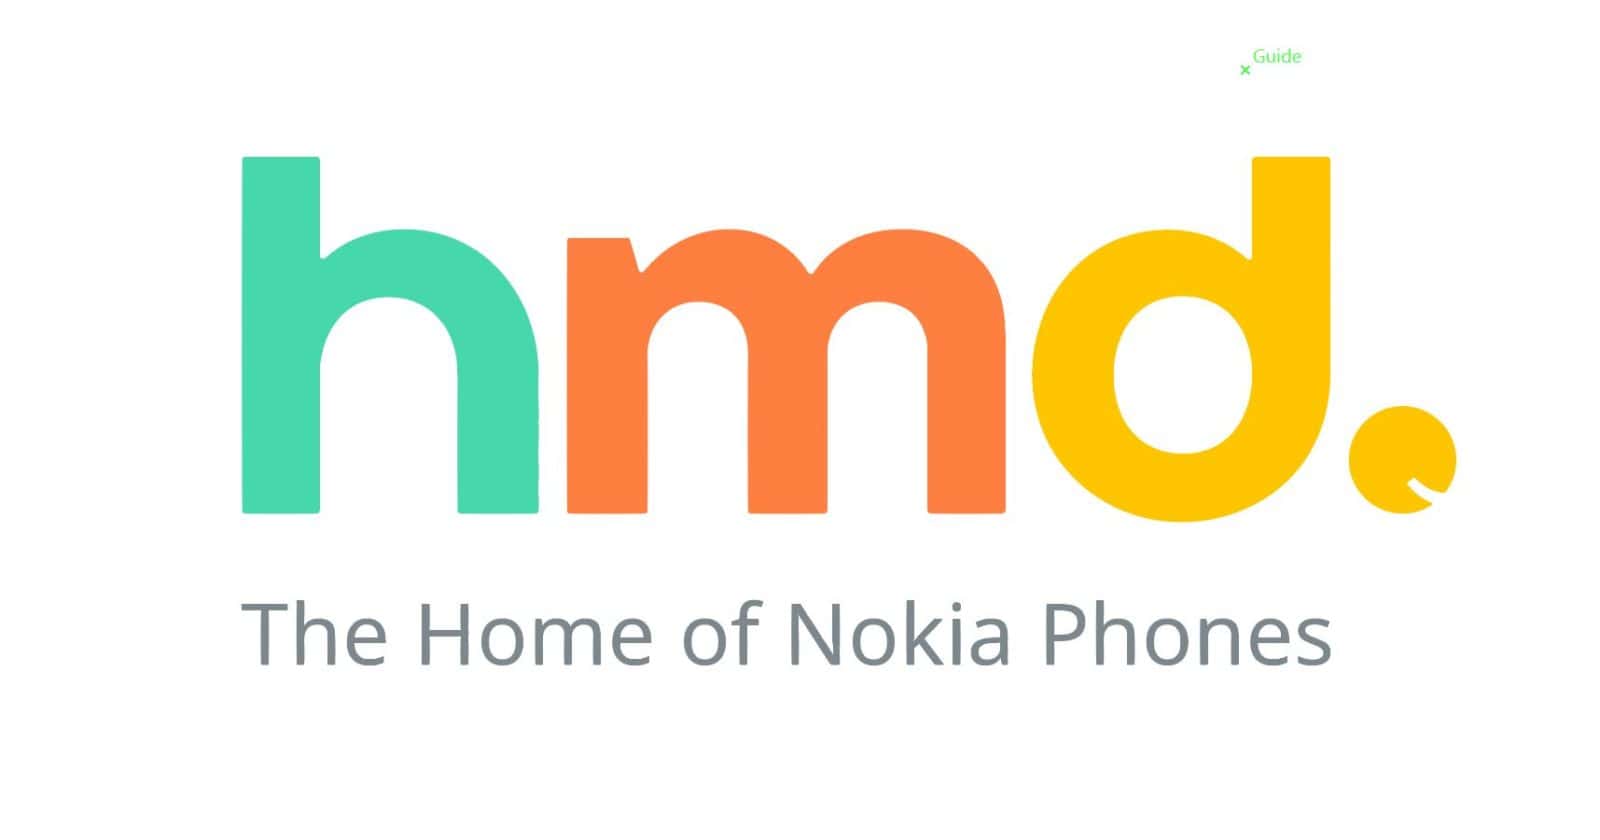 Het logo van HMD Global die de Nokia merknaam bezit